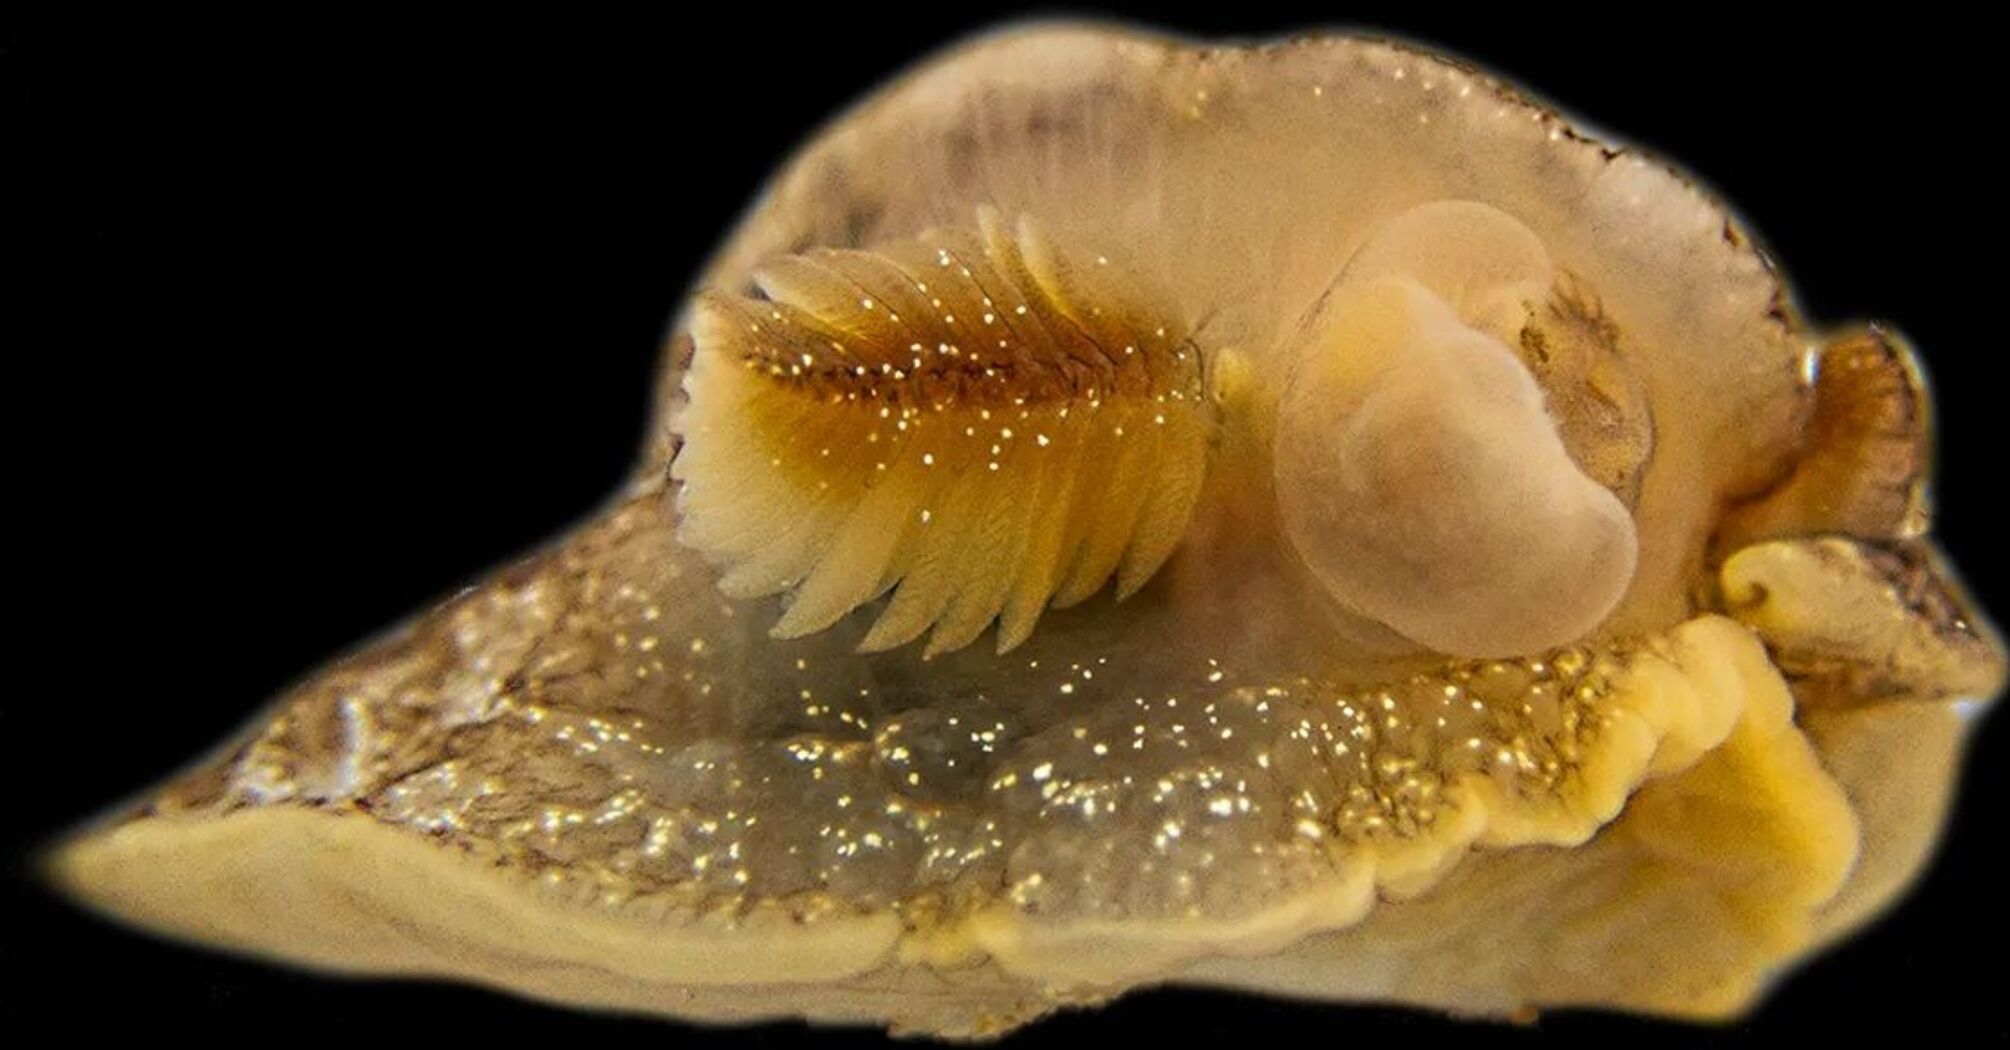 Nowy gatunek ślimaków morskich odkryty przypadkowo w Wielkiej Brytanii (foto)